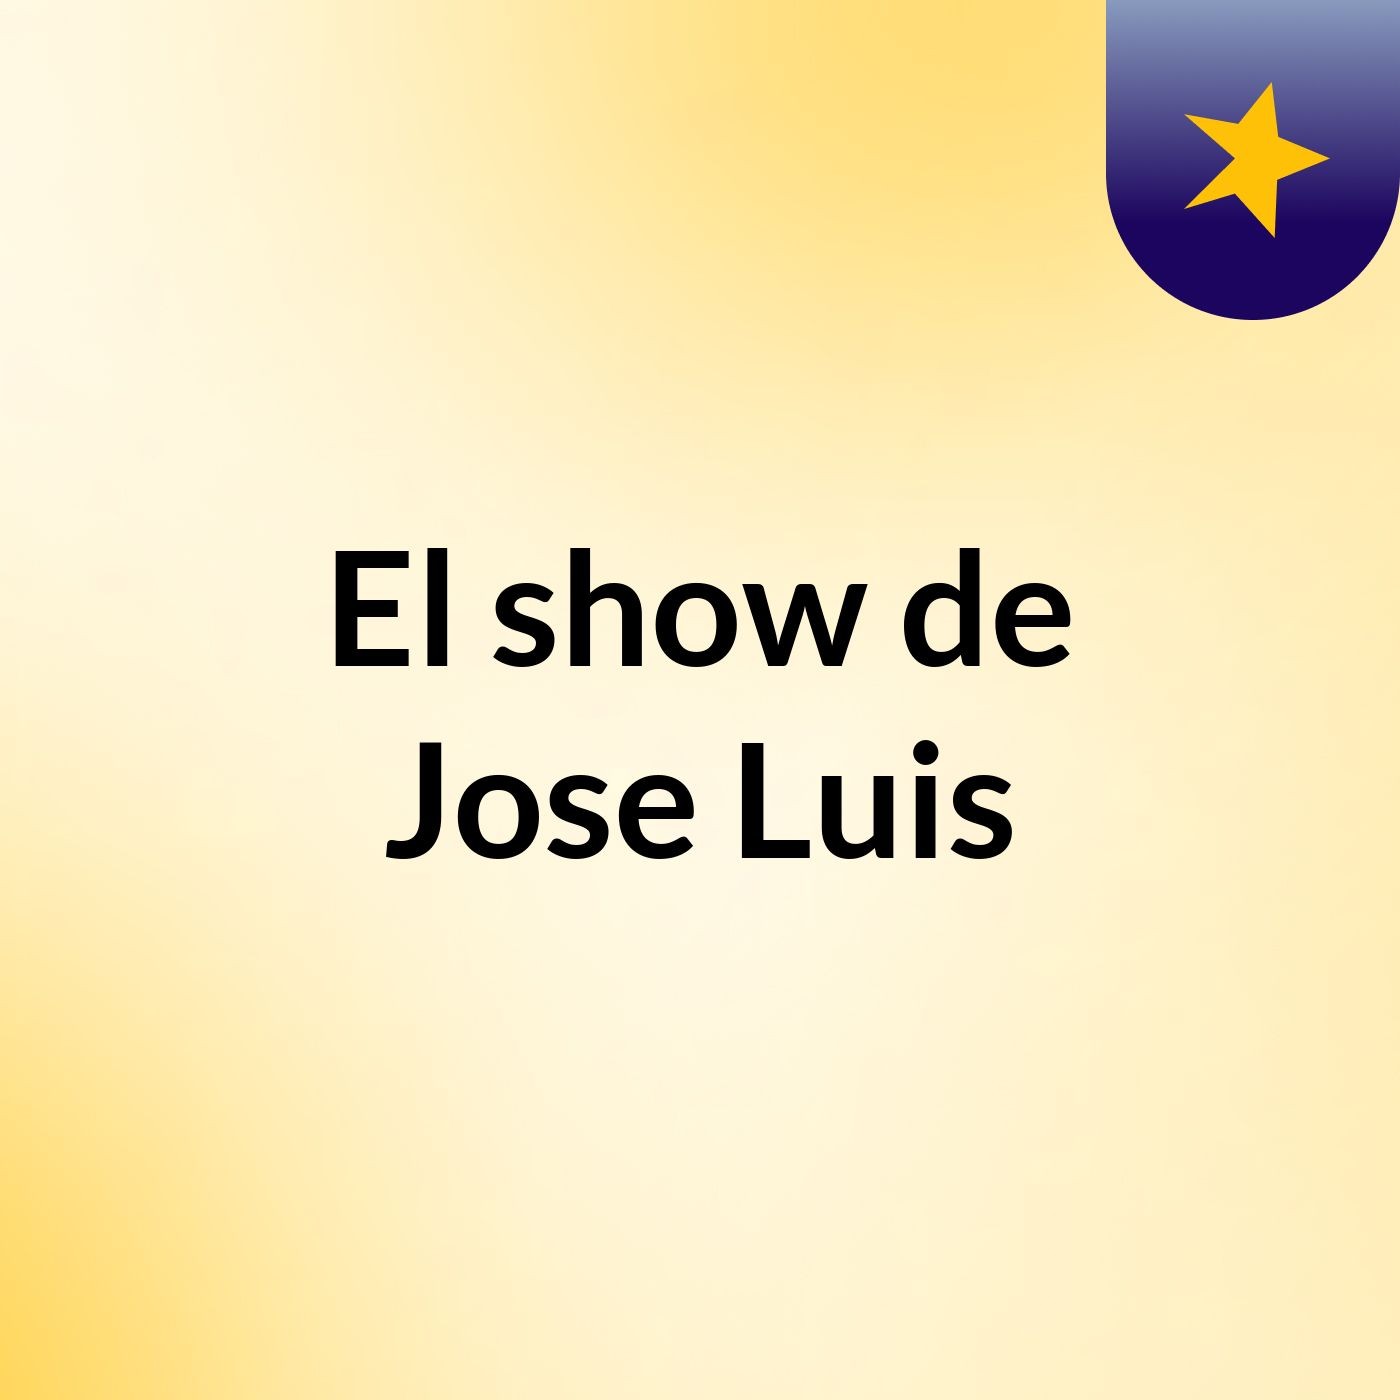 El show de Jose Luis